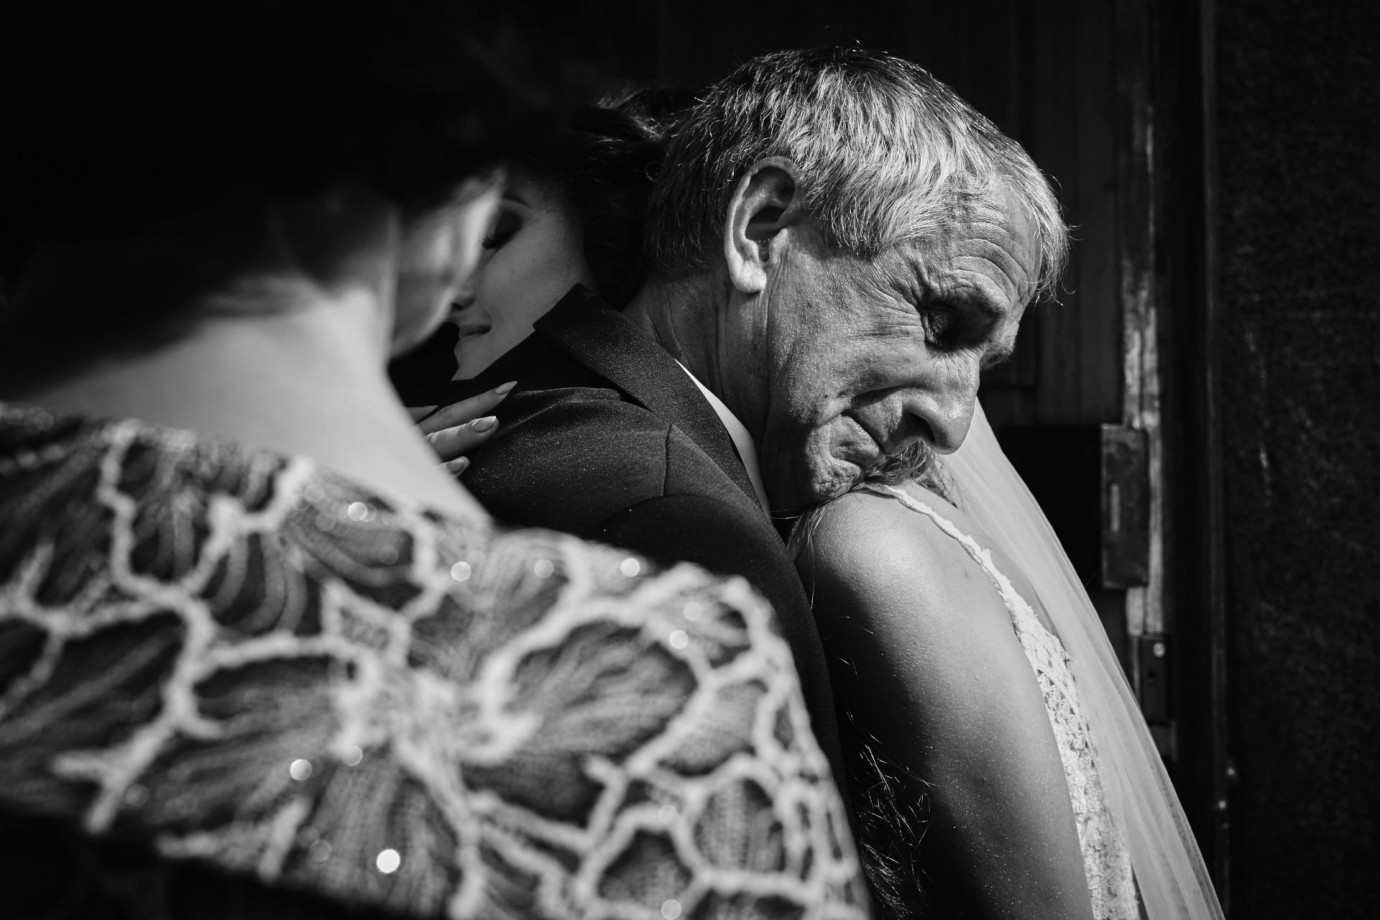 zdjęcia szczecin fotograf fotografia-przemyslaw-bialek portfolio zdjecia slubne inspiracje wesele plener slubny sesja slubna